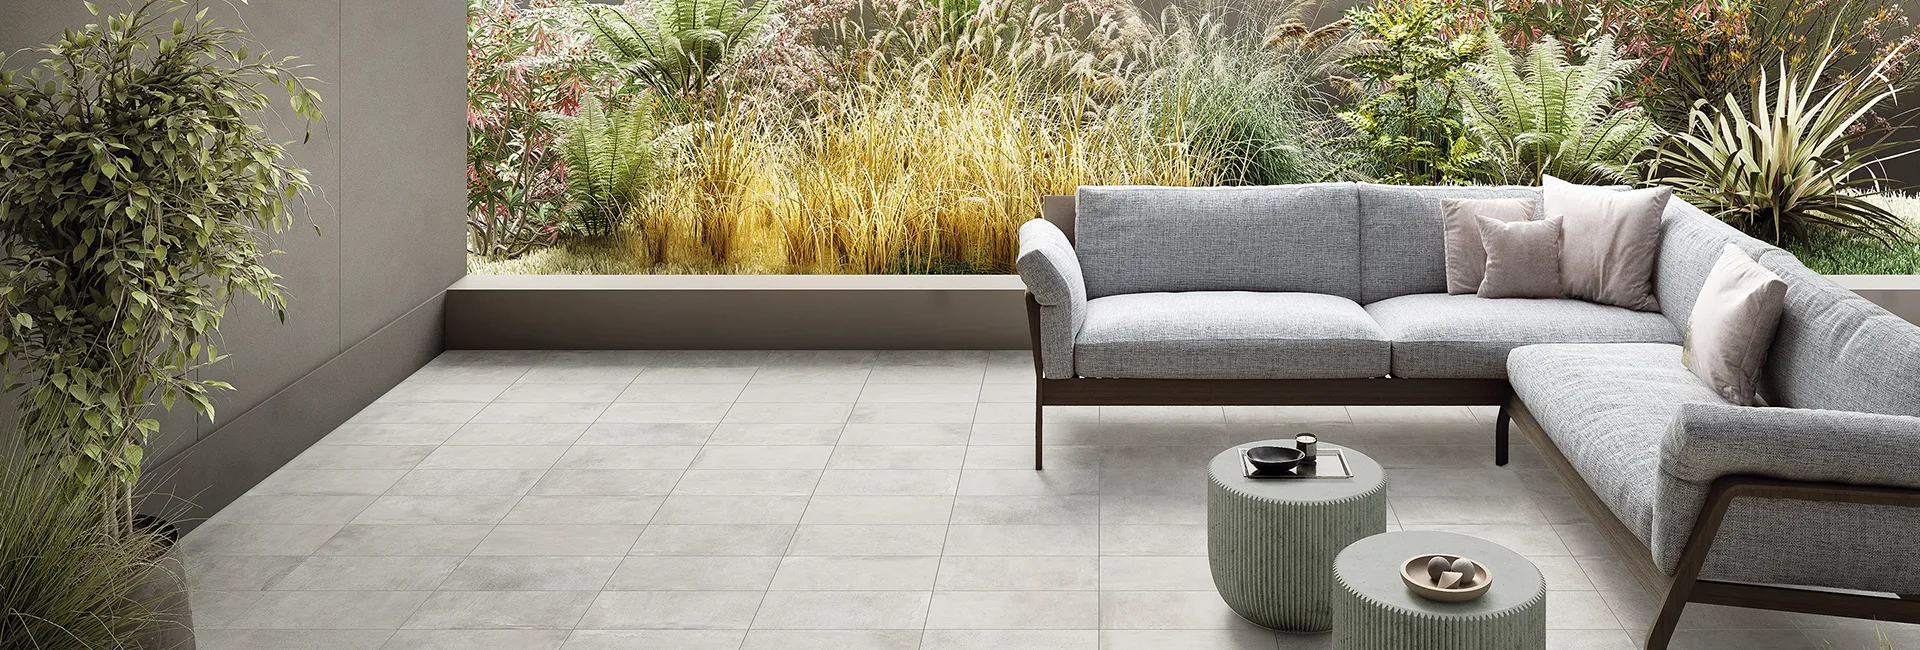 Suelo de gres efecto cemento Street Milano Silver en terraza con sofá y jardín.